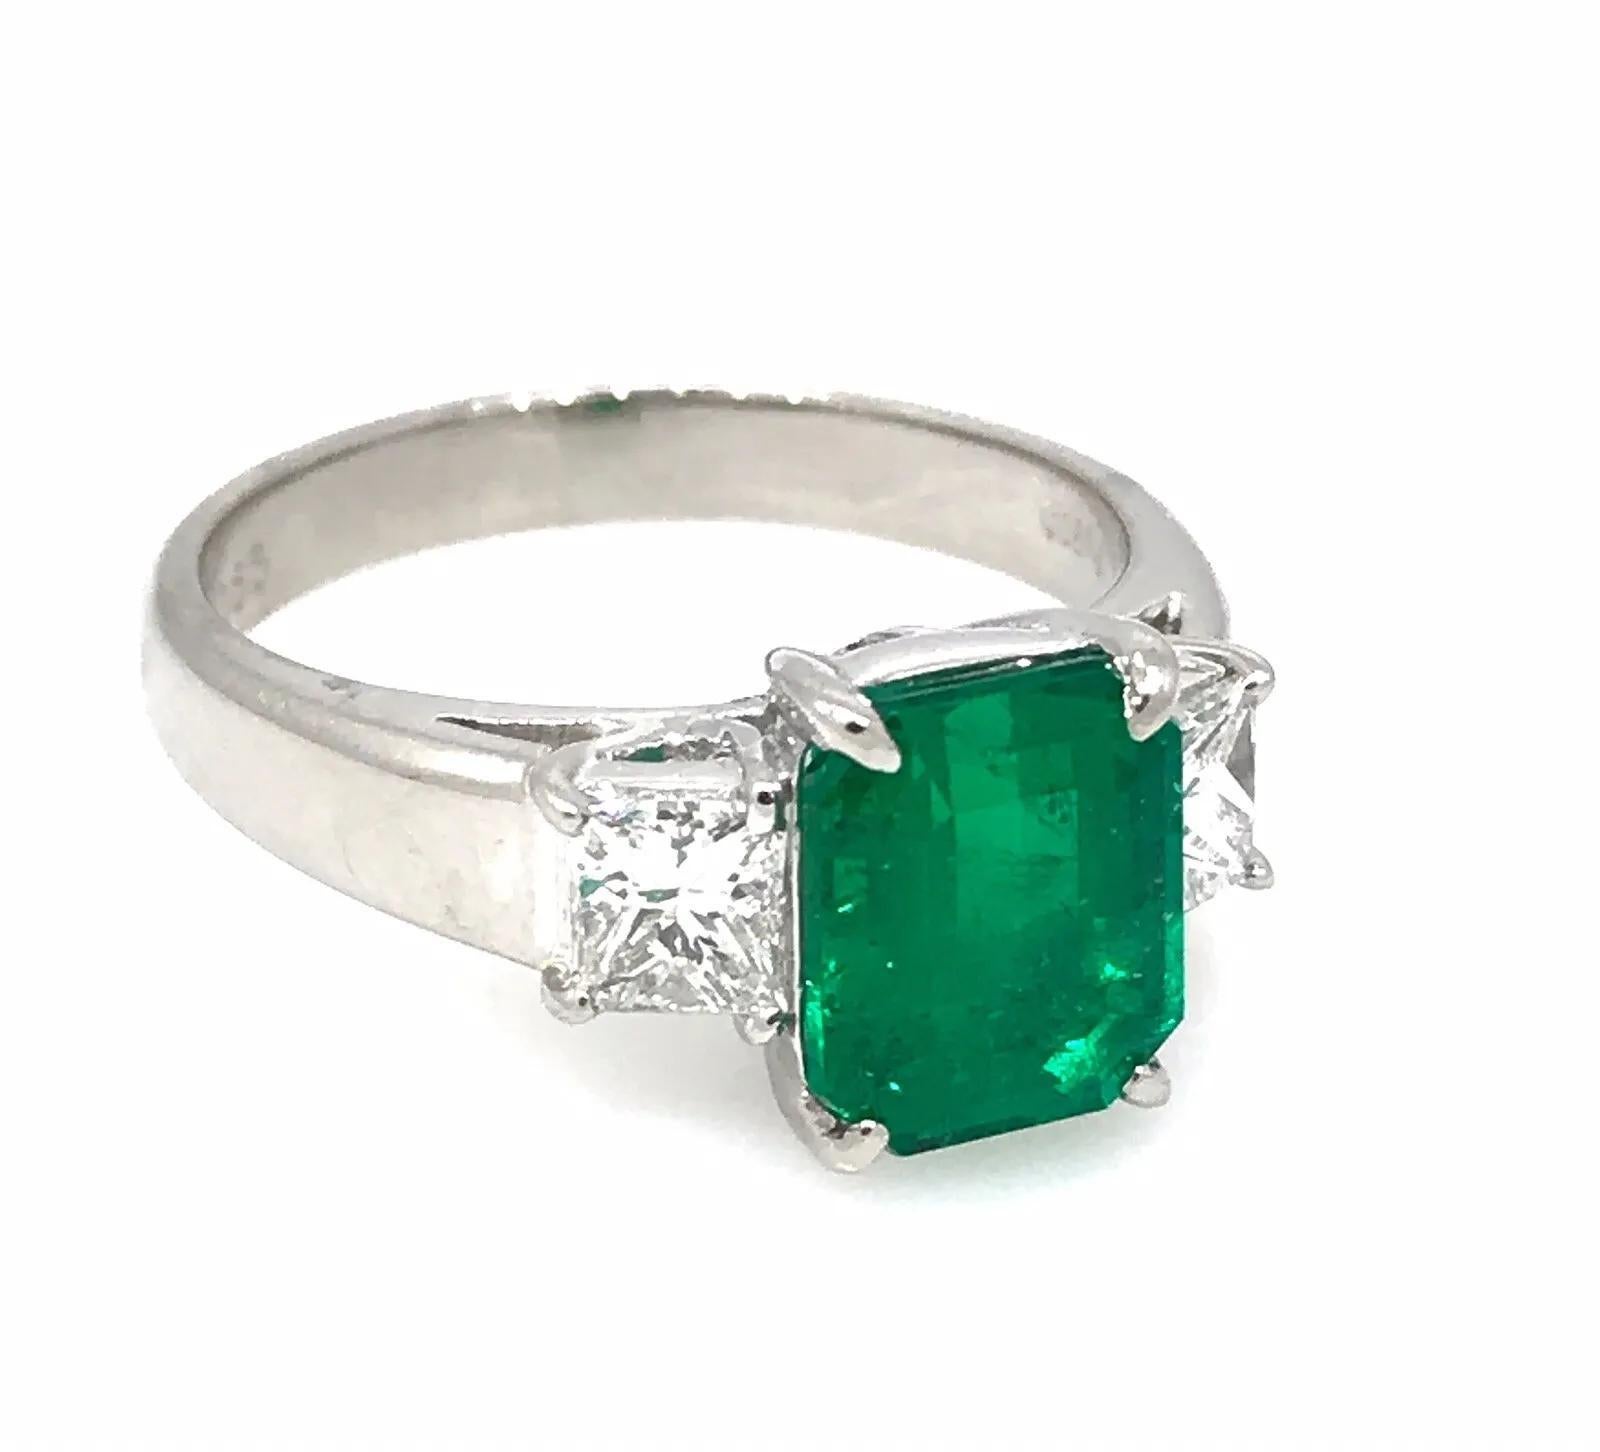 GIA zertifiziert 2,09 Karat Smaragd Ring mit Seite Diamanten in Platin

Smaragd und Diamant Ring verfügt über eine helle lebendige grüne Rechteck-Schliff Smaragd in der Mitte mit 2 Princess-Schliff Diamanten in Platin gesetzt.

Der Smaragd ist